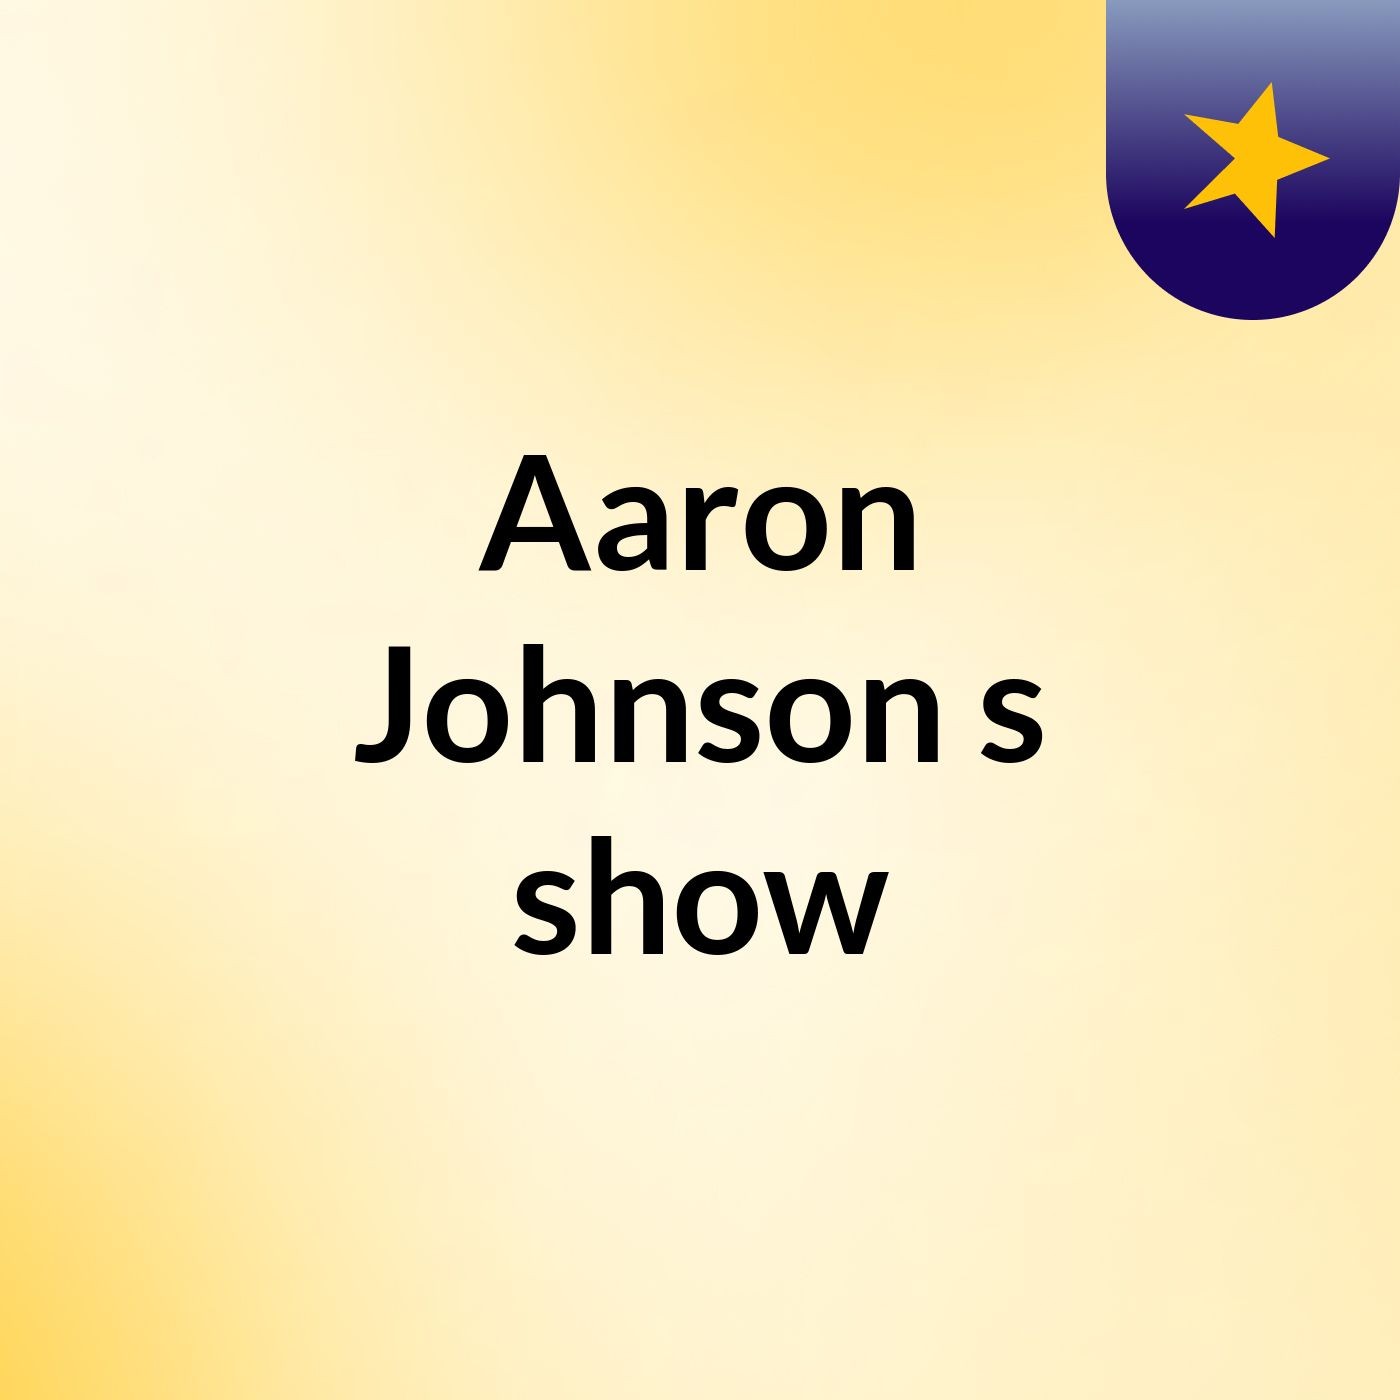 Aaron Johnson's show